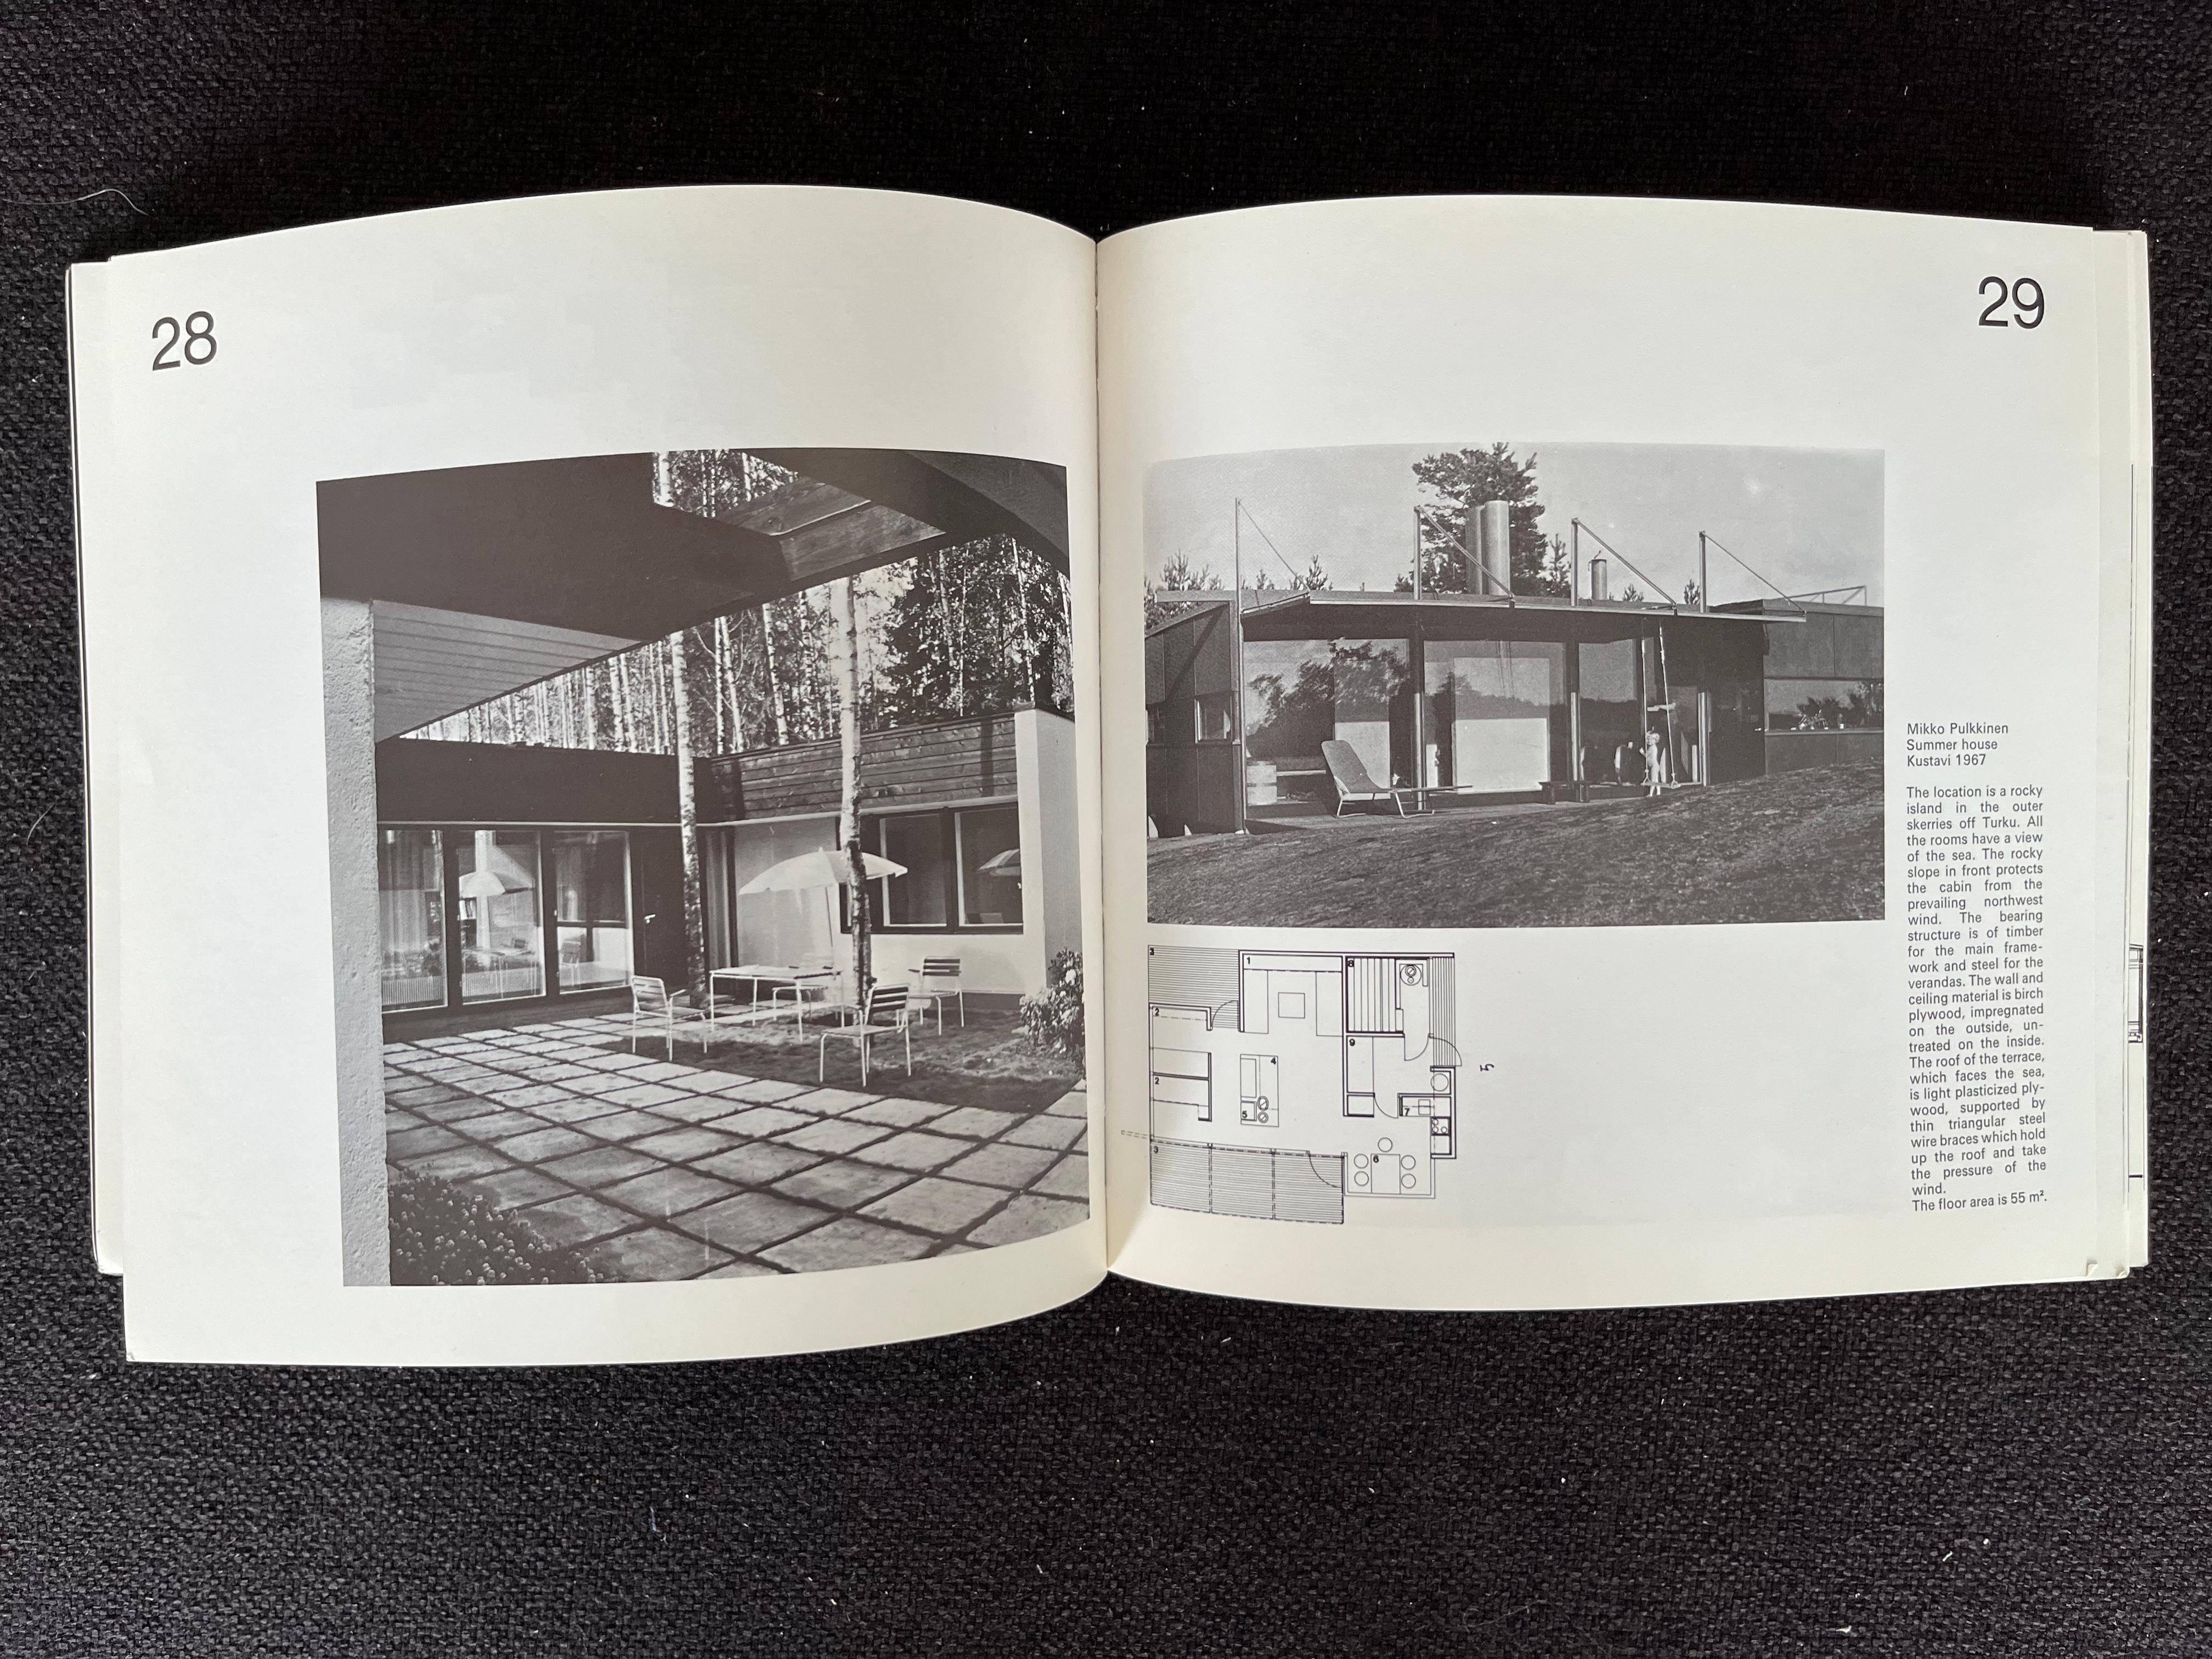 - 1975
- Ausstellung der finnischen Architektur
- Das Museum für finnische Architektur und das niederländische Kongresszentrum
- guter Originalzustand
- viele Bilder inkl. Inneneinrichtung von Alvar Aalto
- JR.